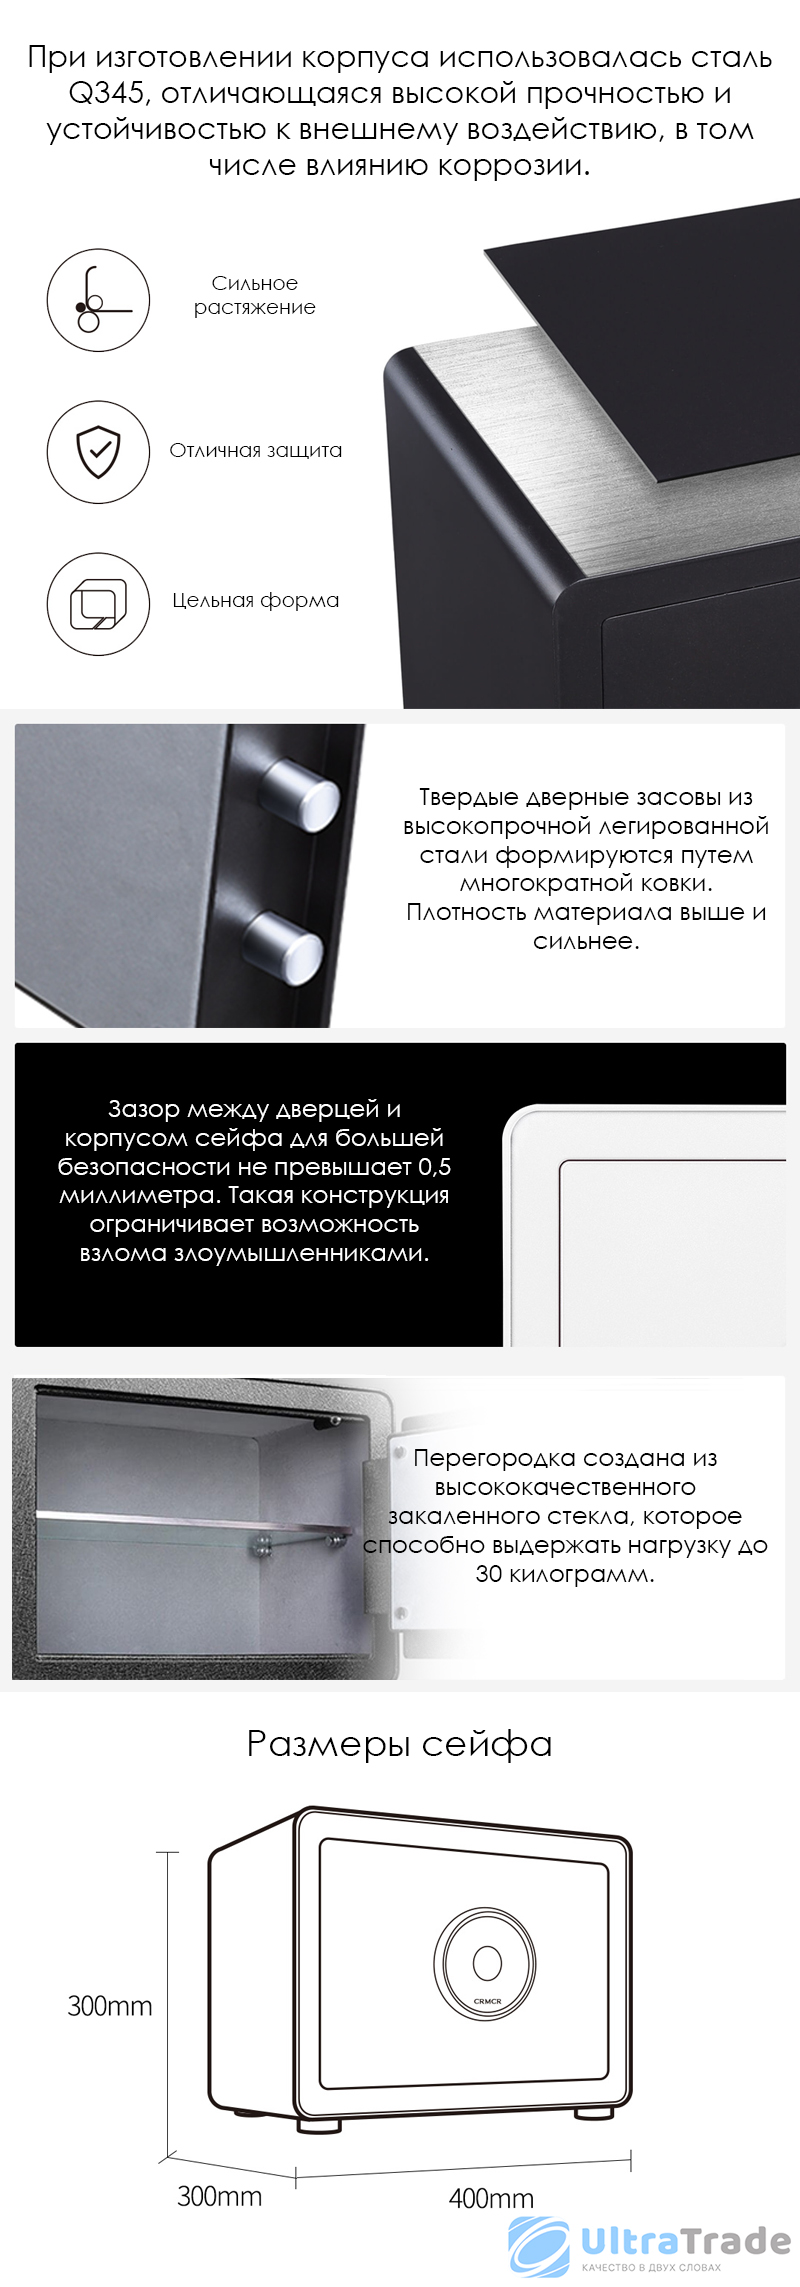 Умный электронный сейф с датчиком отпечатка пальца Xiaomi CRMCR Cayo Anno Fingerprint Safe Deposit Box 30Z (BGX-X1-30Z) Dark Grey